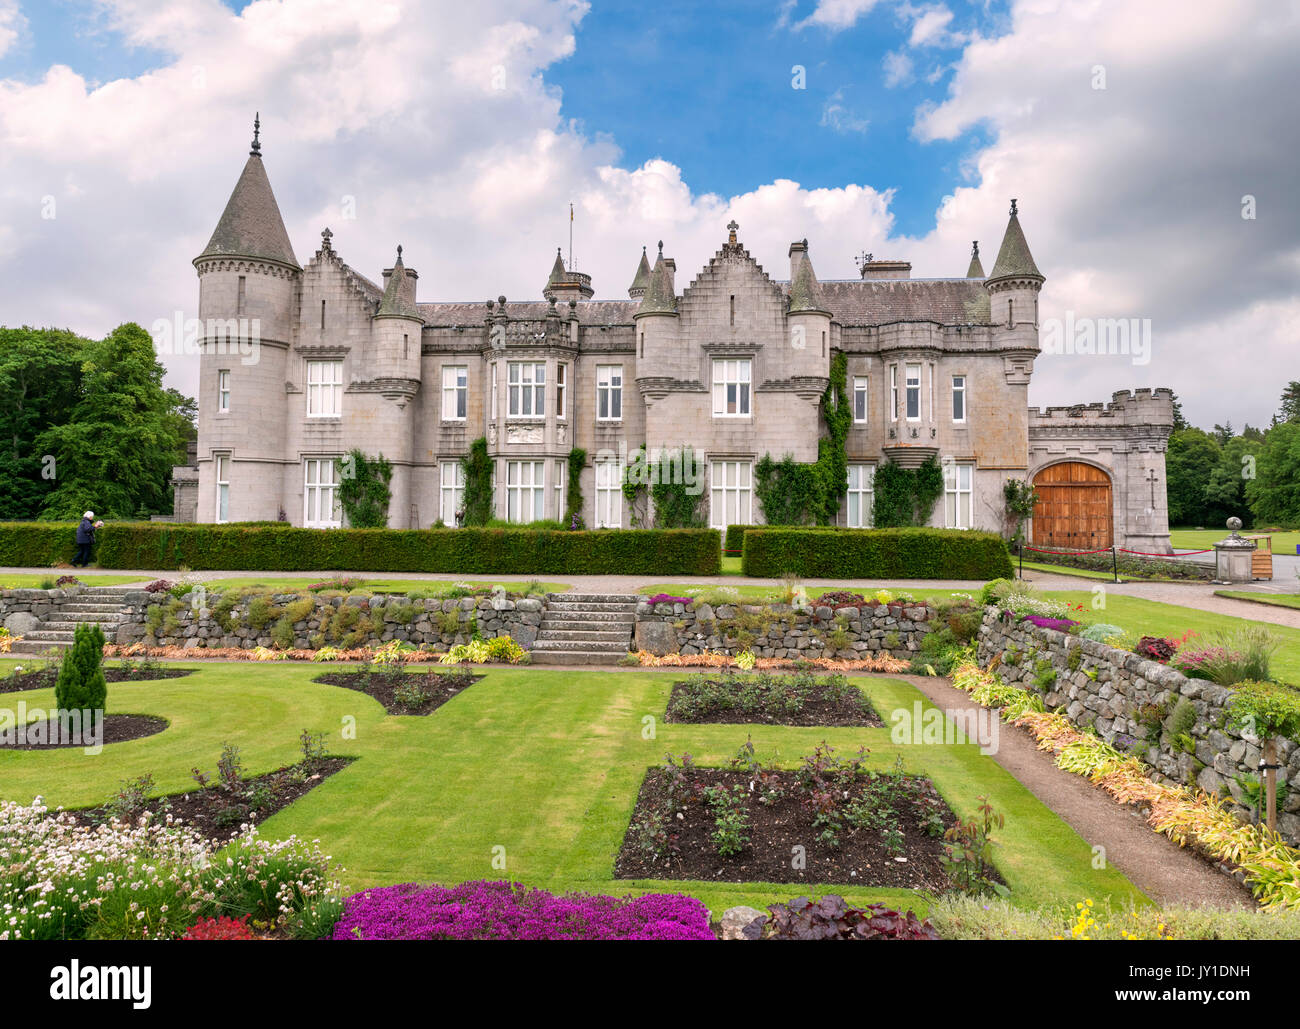 El castillo de Balmoral, residencia Escocesa de la familia real, Crathie, Royal Deeside, aberdeenshire, Escocia, Reino Unido Foto de stock